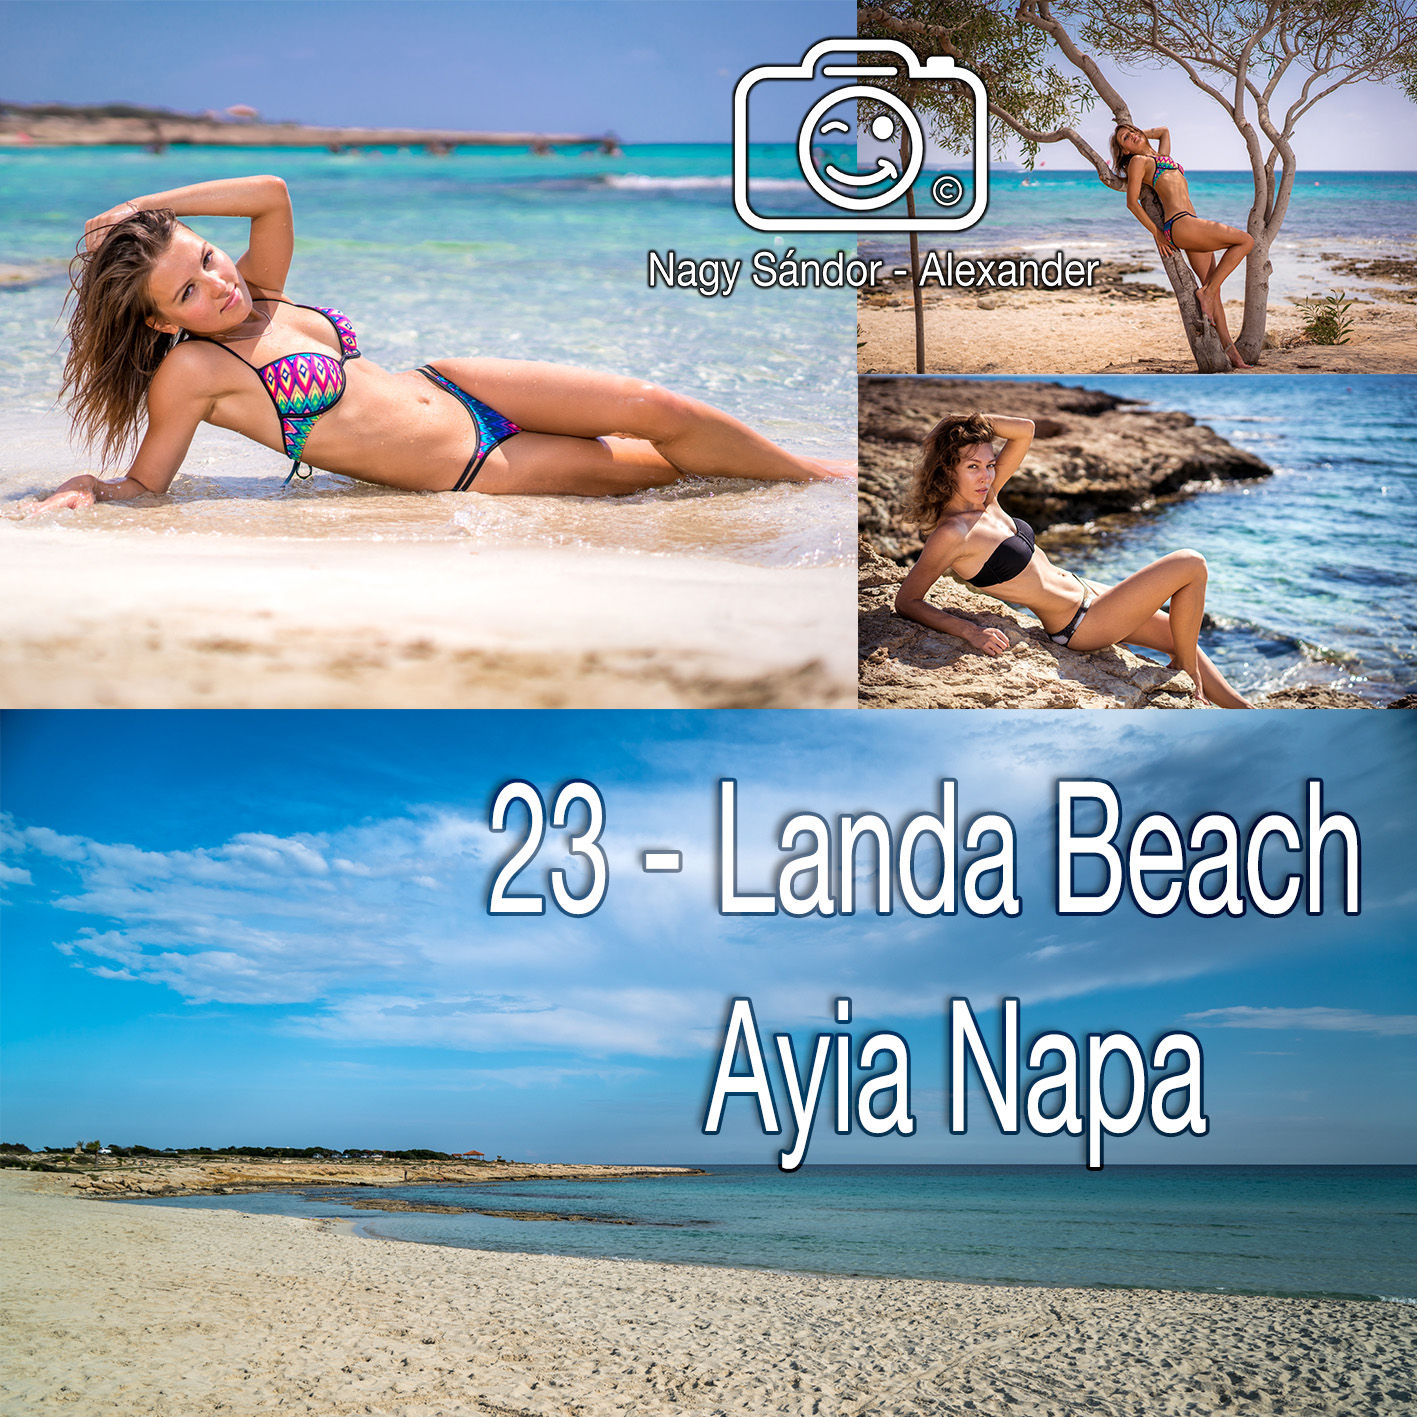 23 – Landa Beach – Ayia Napa